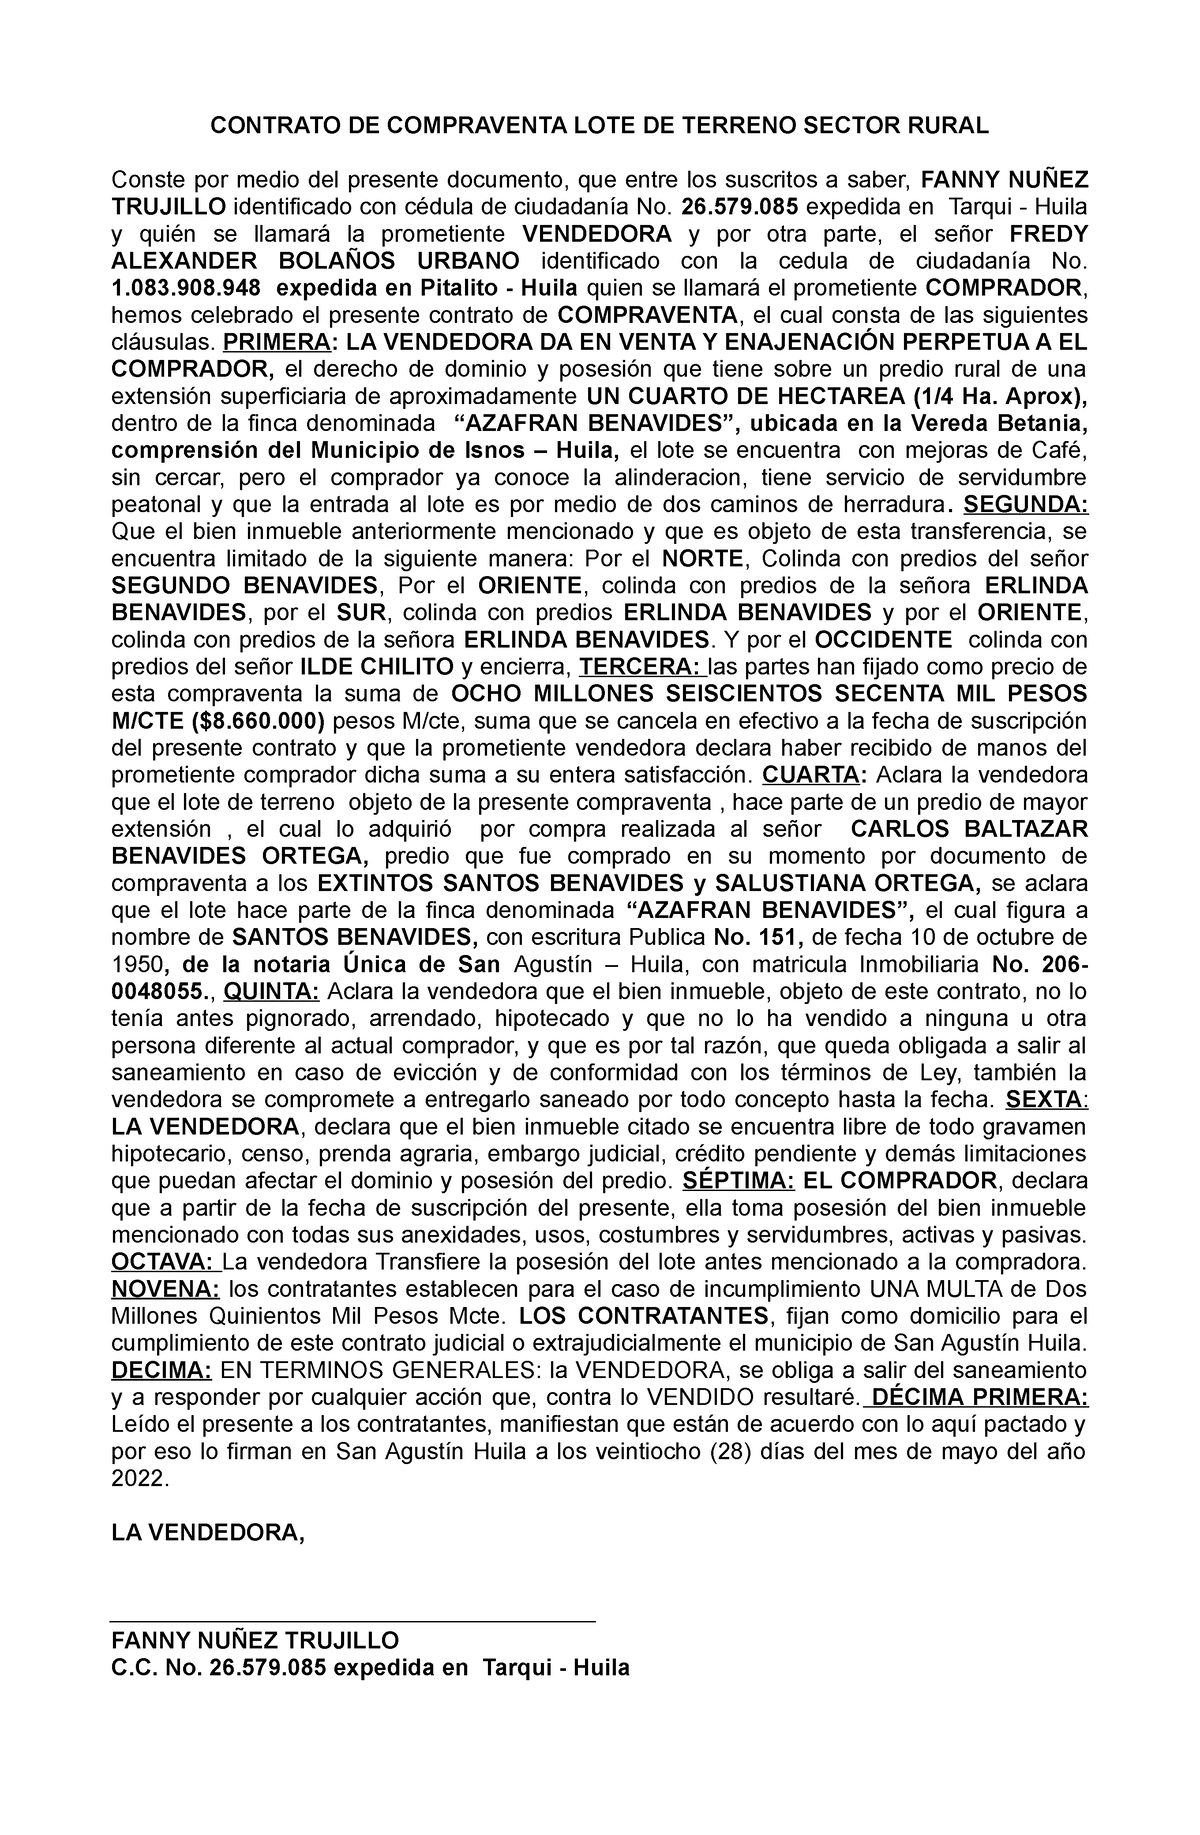 Contrato DE Compraventa LOTE DE Terreno 28 Marzo 2022 2 - CONTRATO DE  COMPRAVENTA LOTE DE TERRENO - Studocu